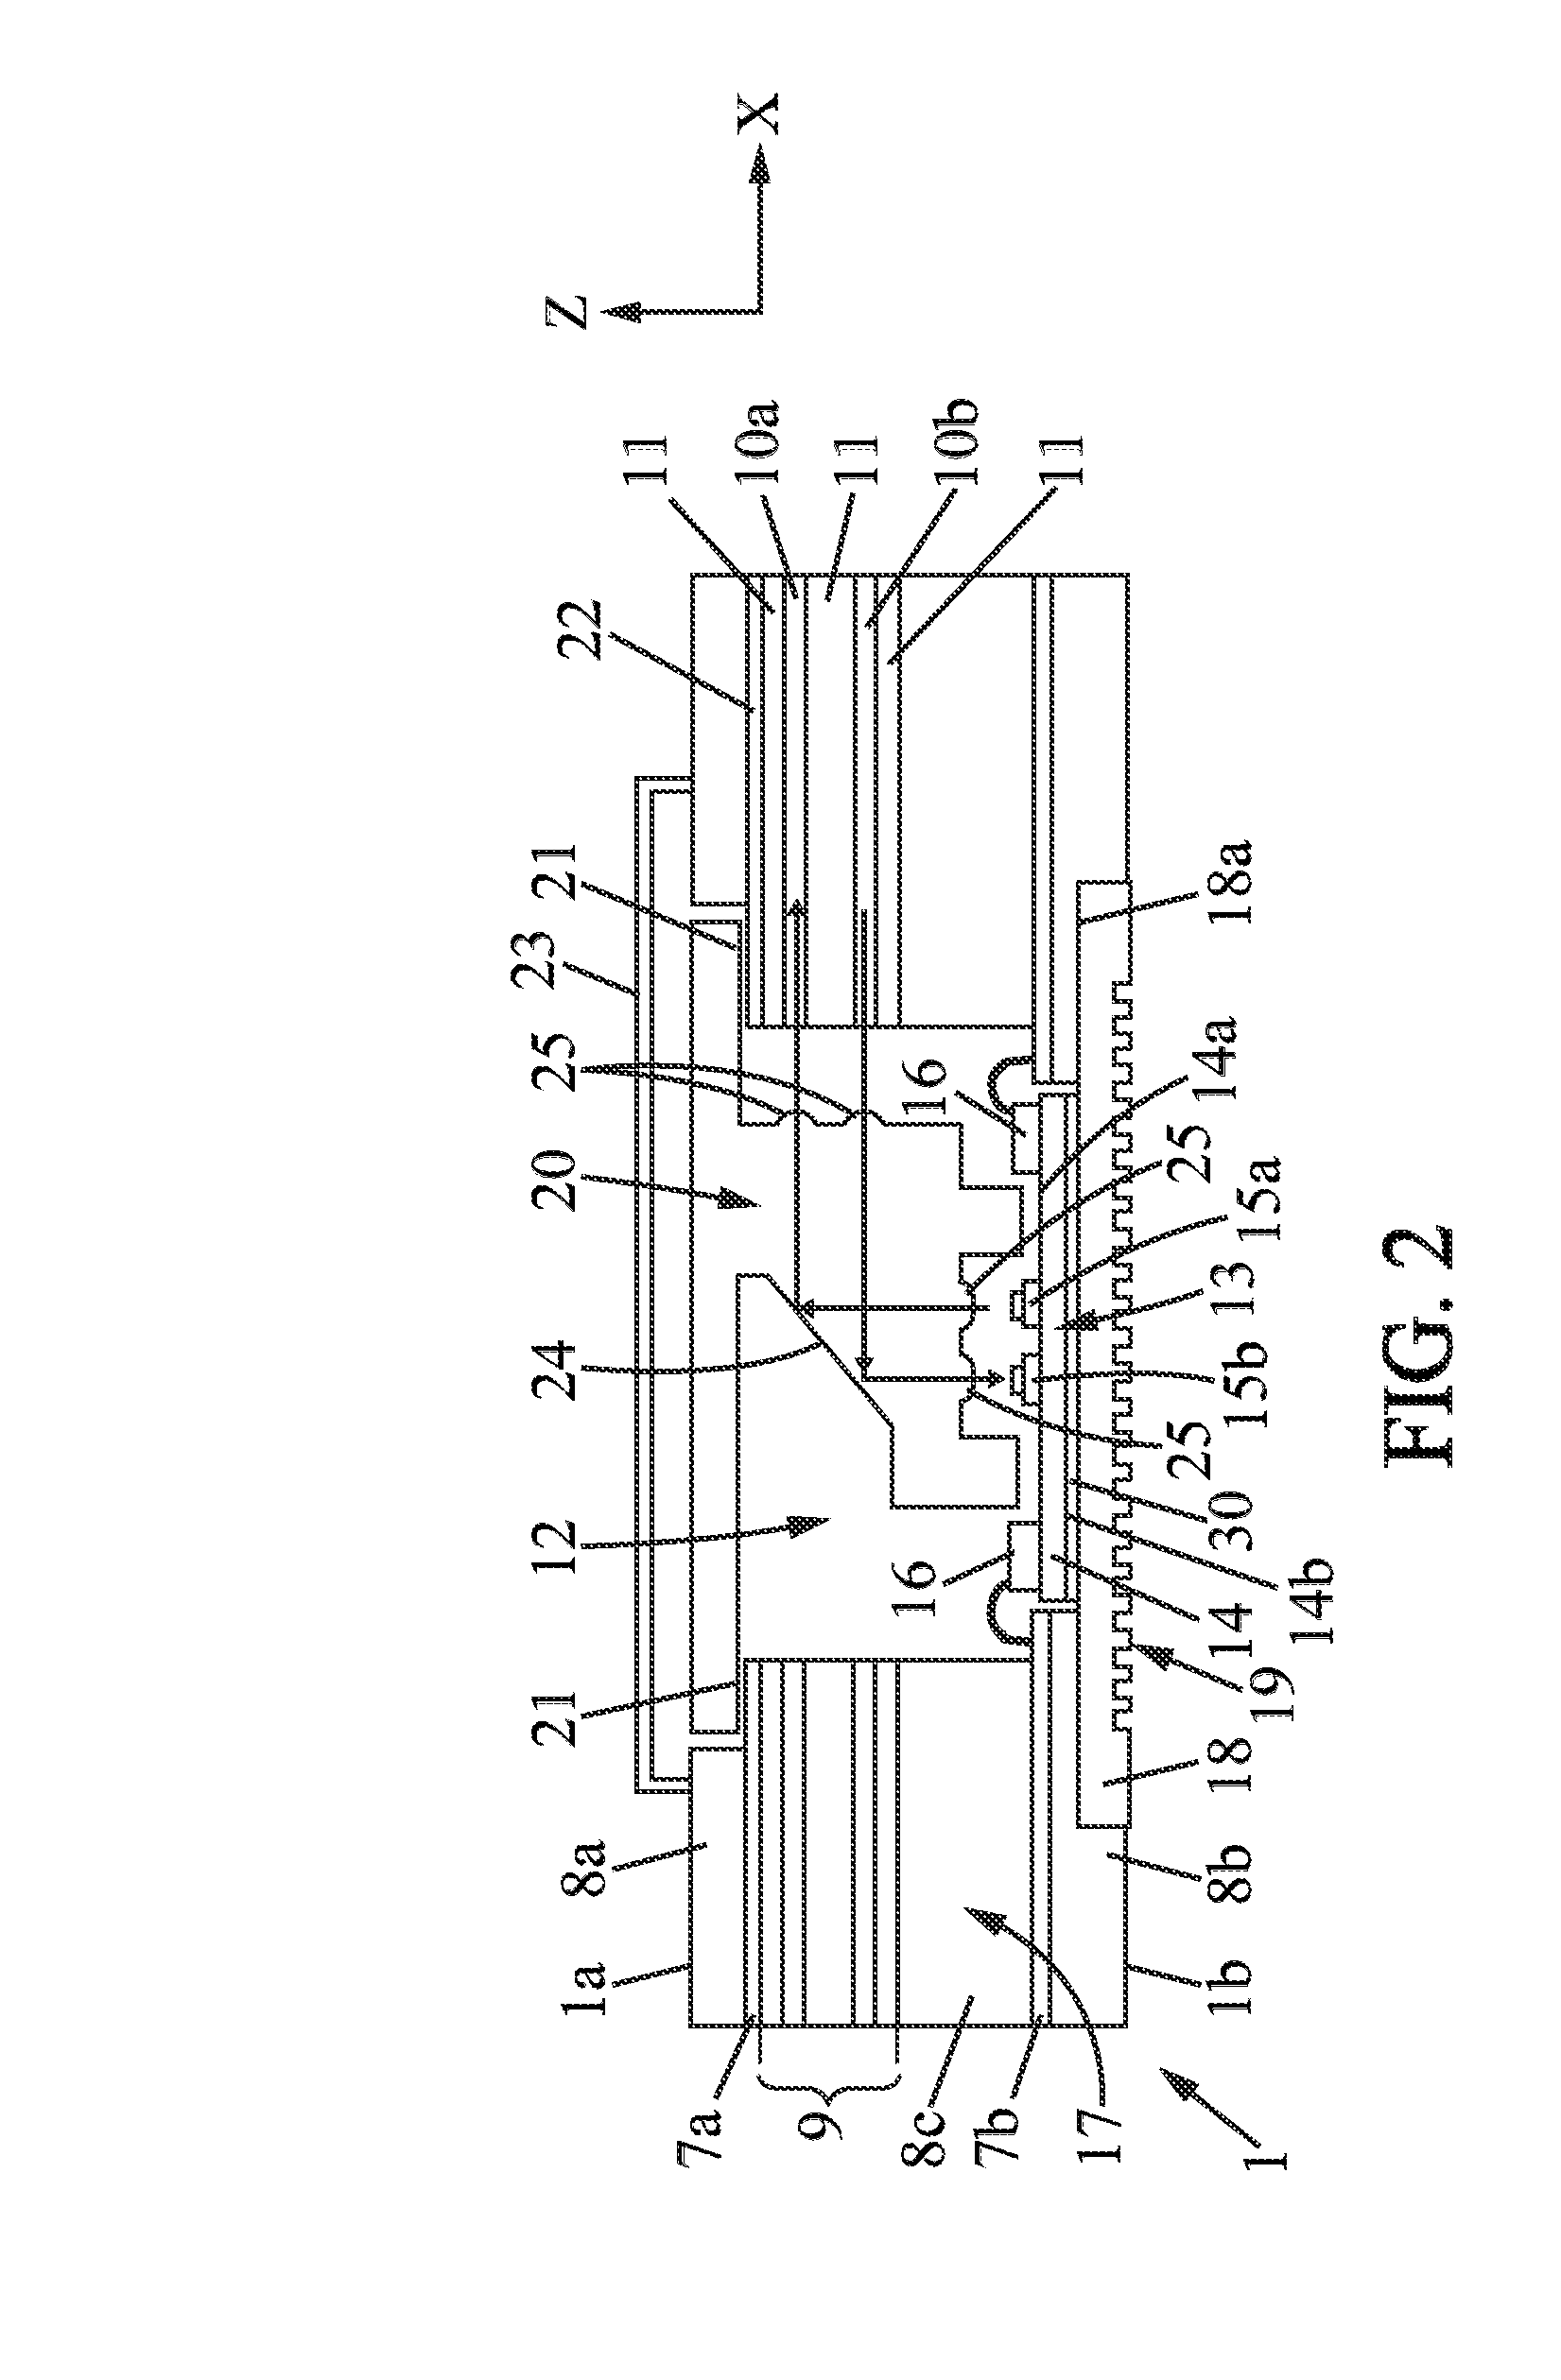 Optical Circuit Board